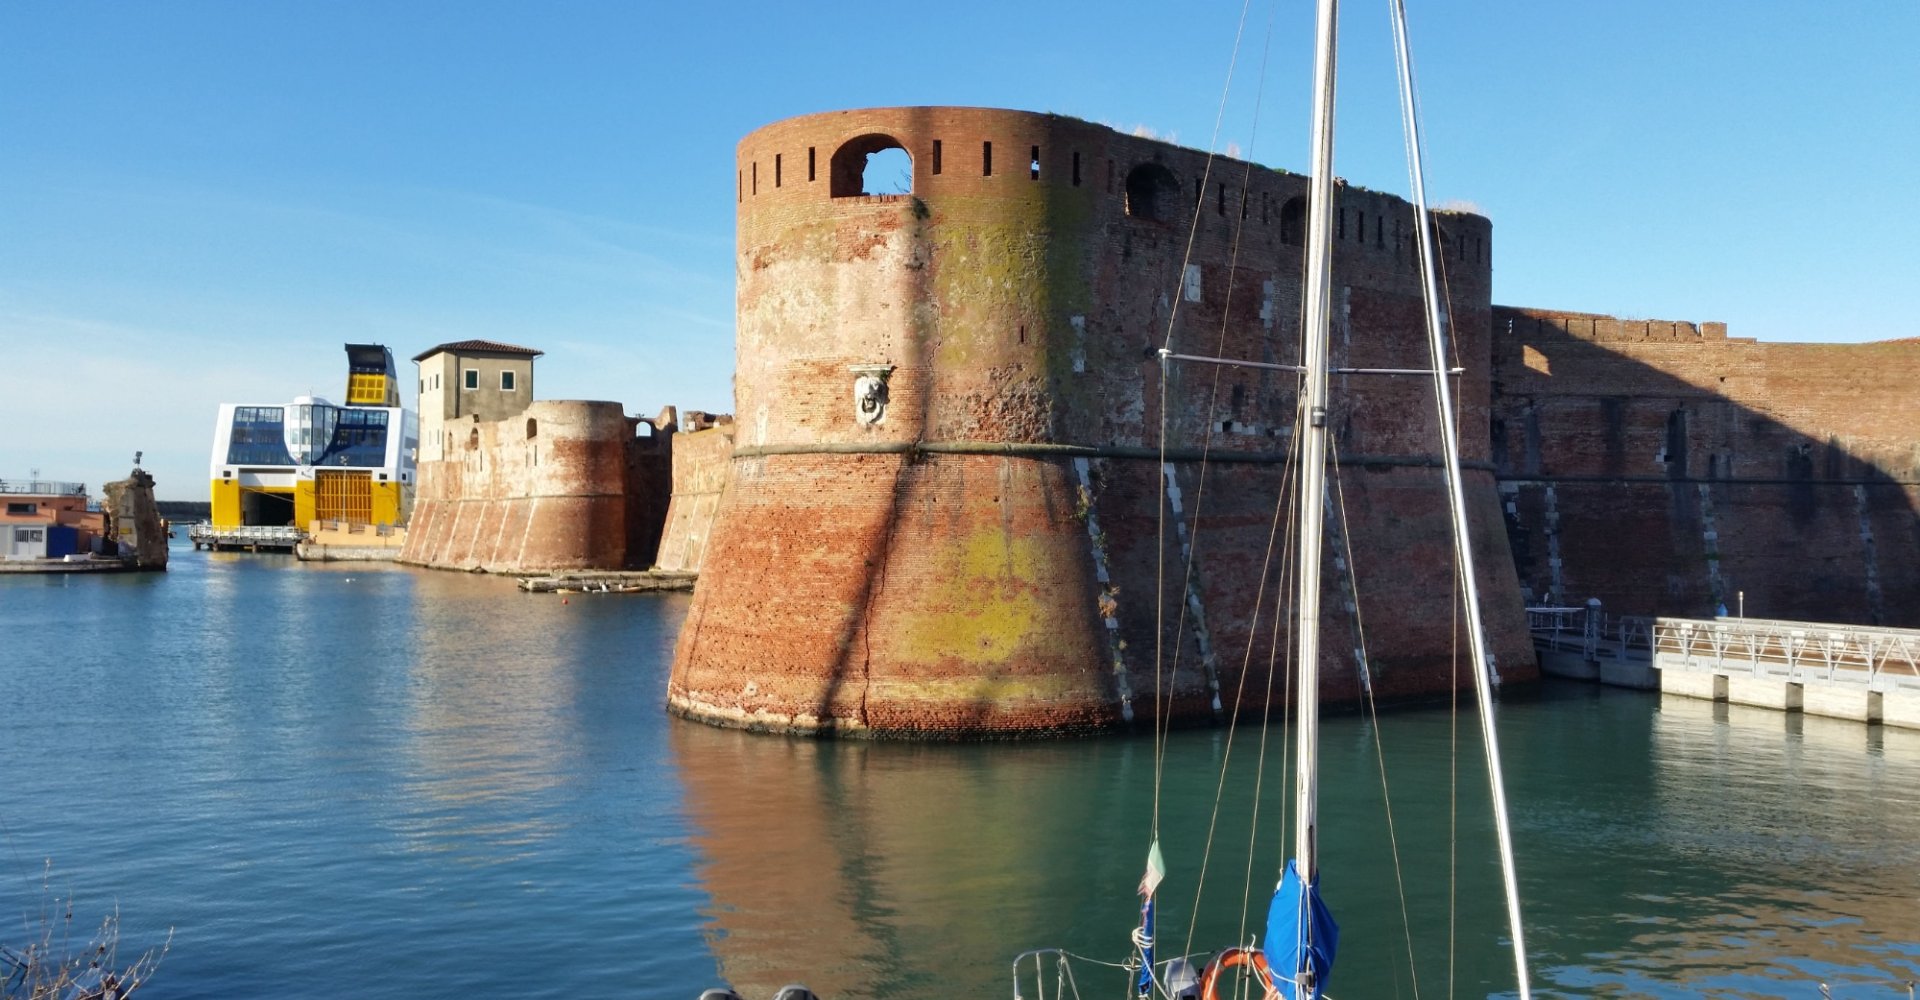 Fortaleza Antigua de Livorno